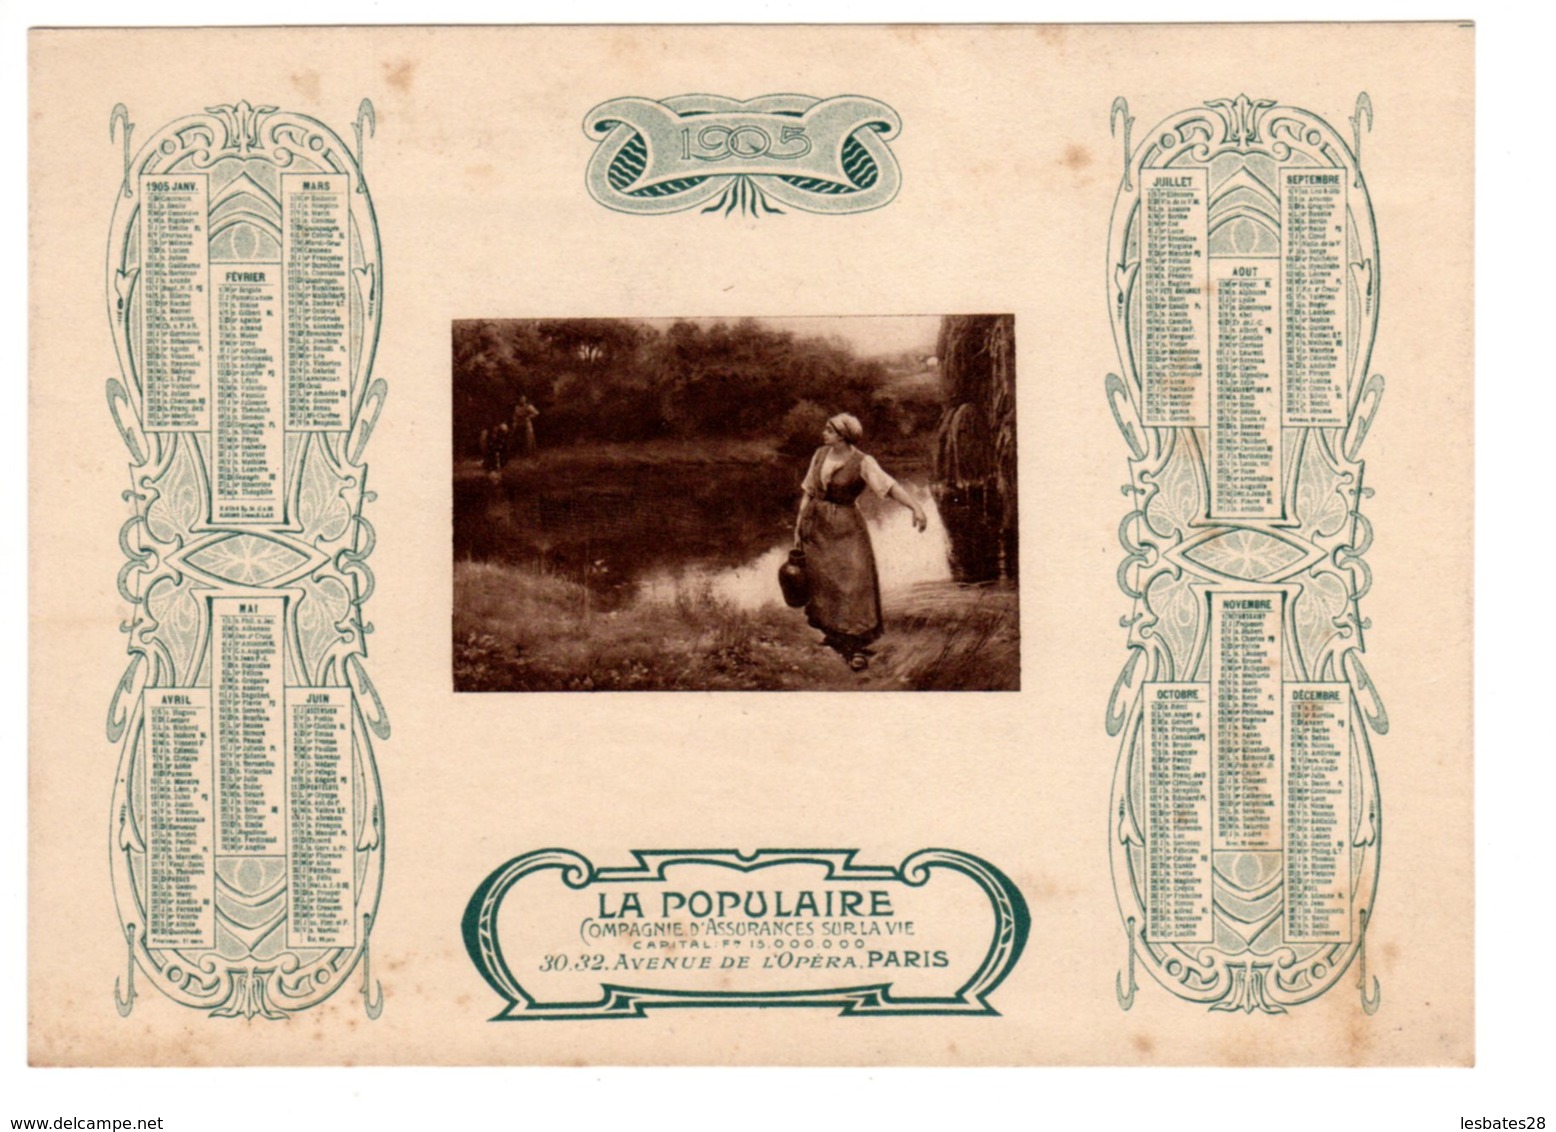 Almanach-CALENDRIER 1905 LA POPULAIRE Compagnie D'Assurance Sur La Vie Publicité Allegorie Porteuse D'Eau FEVR 2019 ABL4 - Tamaño Grande : 1901-20